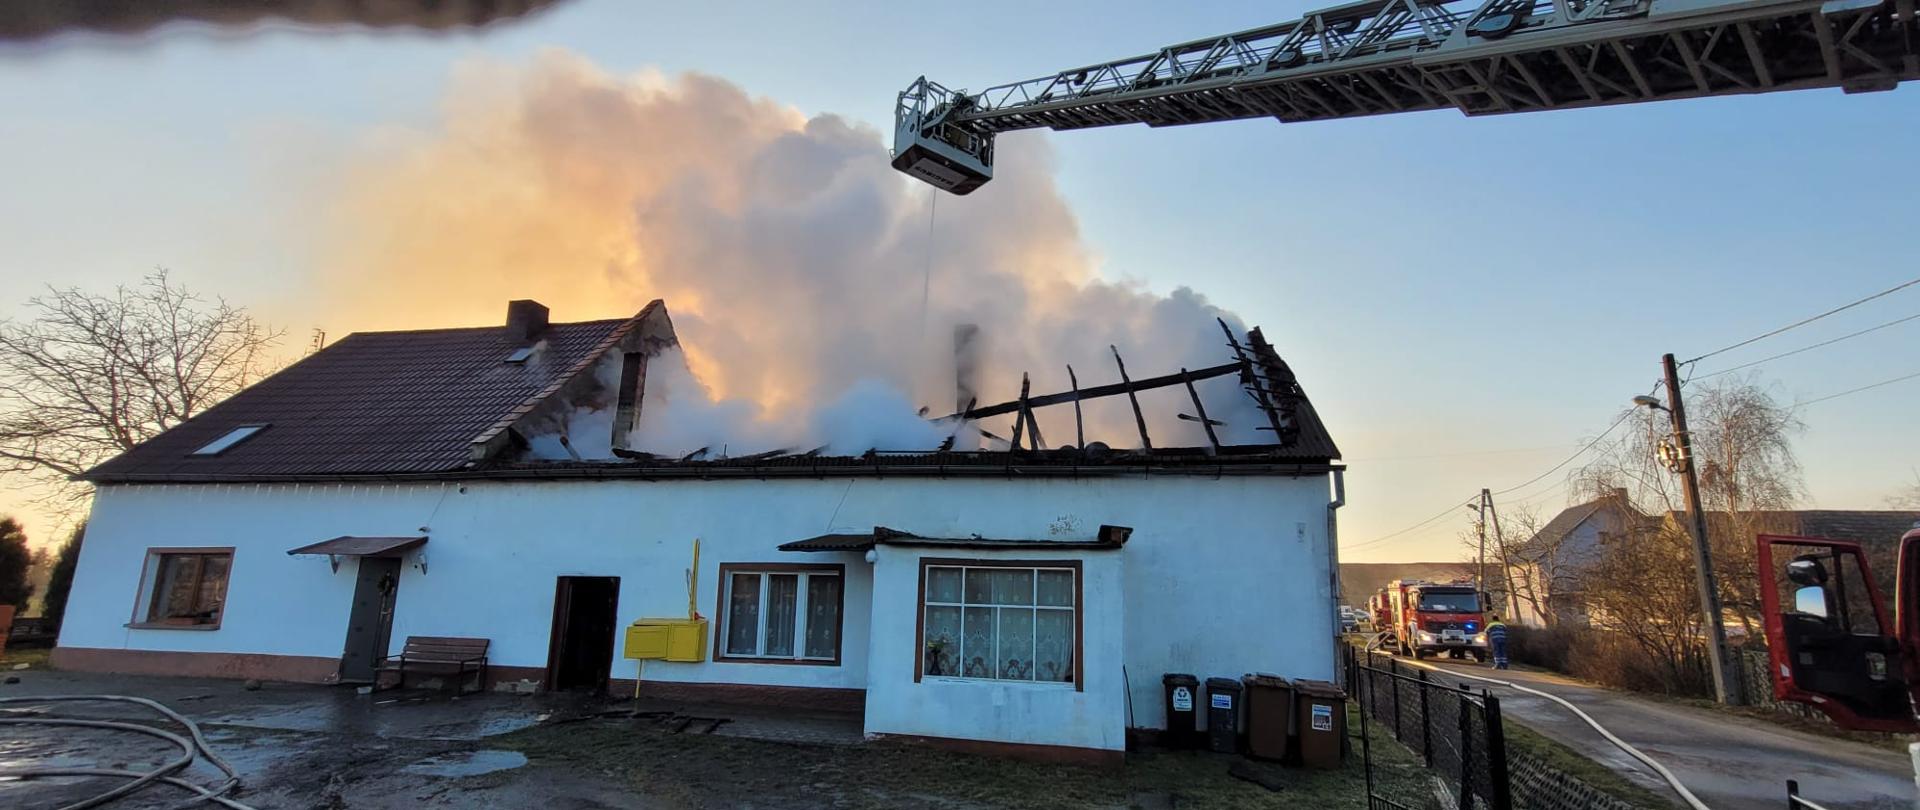 Pożar budynku jednorodzinnego w miejscowości Golanka Dolna